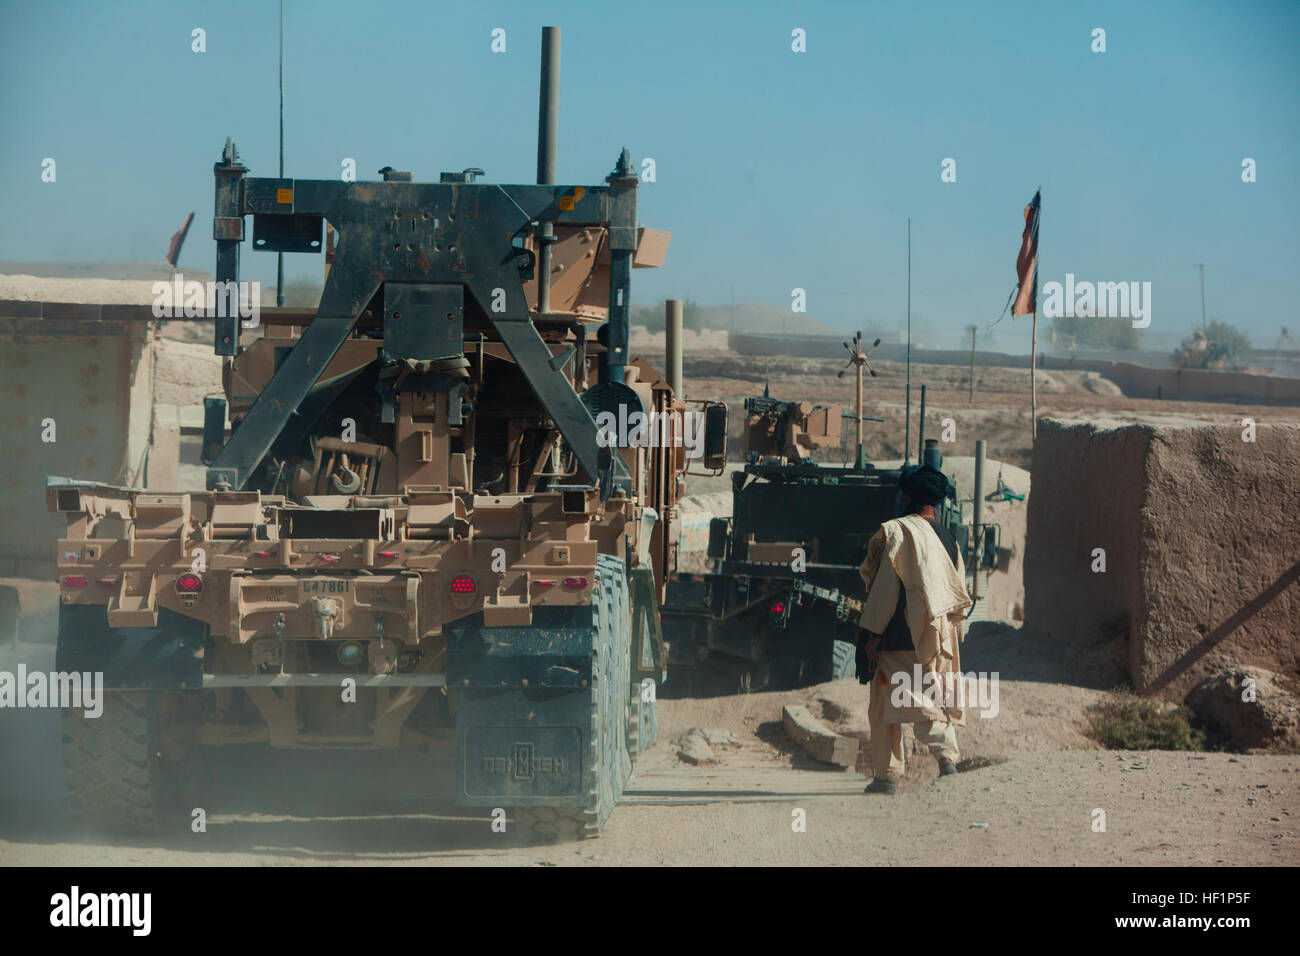 Une patrouille de logistique de combat menées par 2 Régiment de logistique de combat, Commandement régional (Sud-ouest), passe à travers un village près de la base d'opération avancée Shir Ghazi, province de Helmand, Afghanistan, le 22 octobre 2013. Plc-2 a effectué cinq jours de mission de ravitaillement et retour à l'appui de diverses bases dans la province. Cinq jours, deux paires de chaussettes plus tard, les opérations de convoi en Afghanistan 131022-M-ZB219-827 Banque D'Images